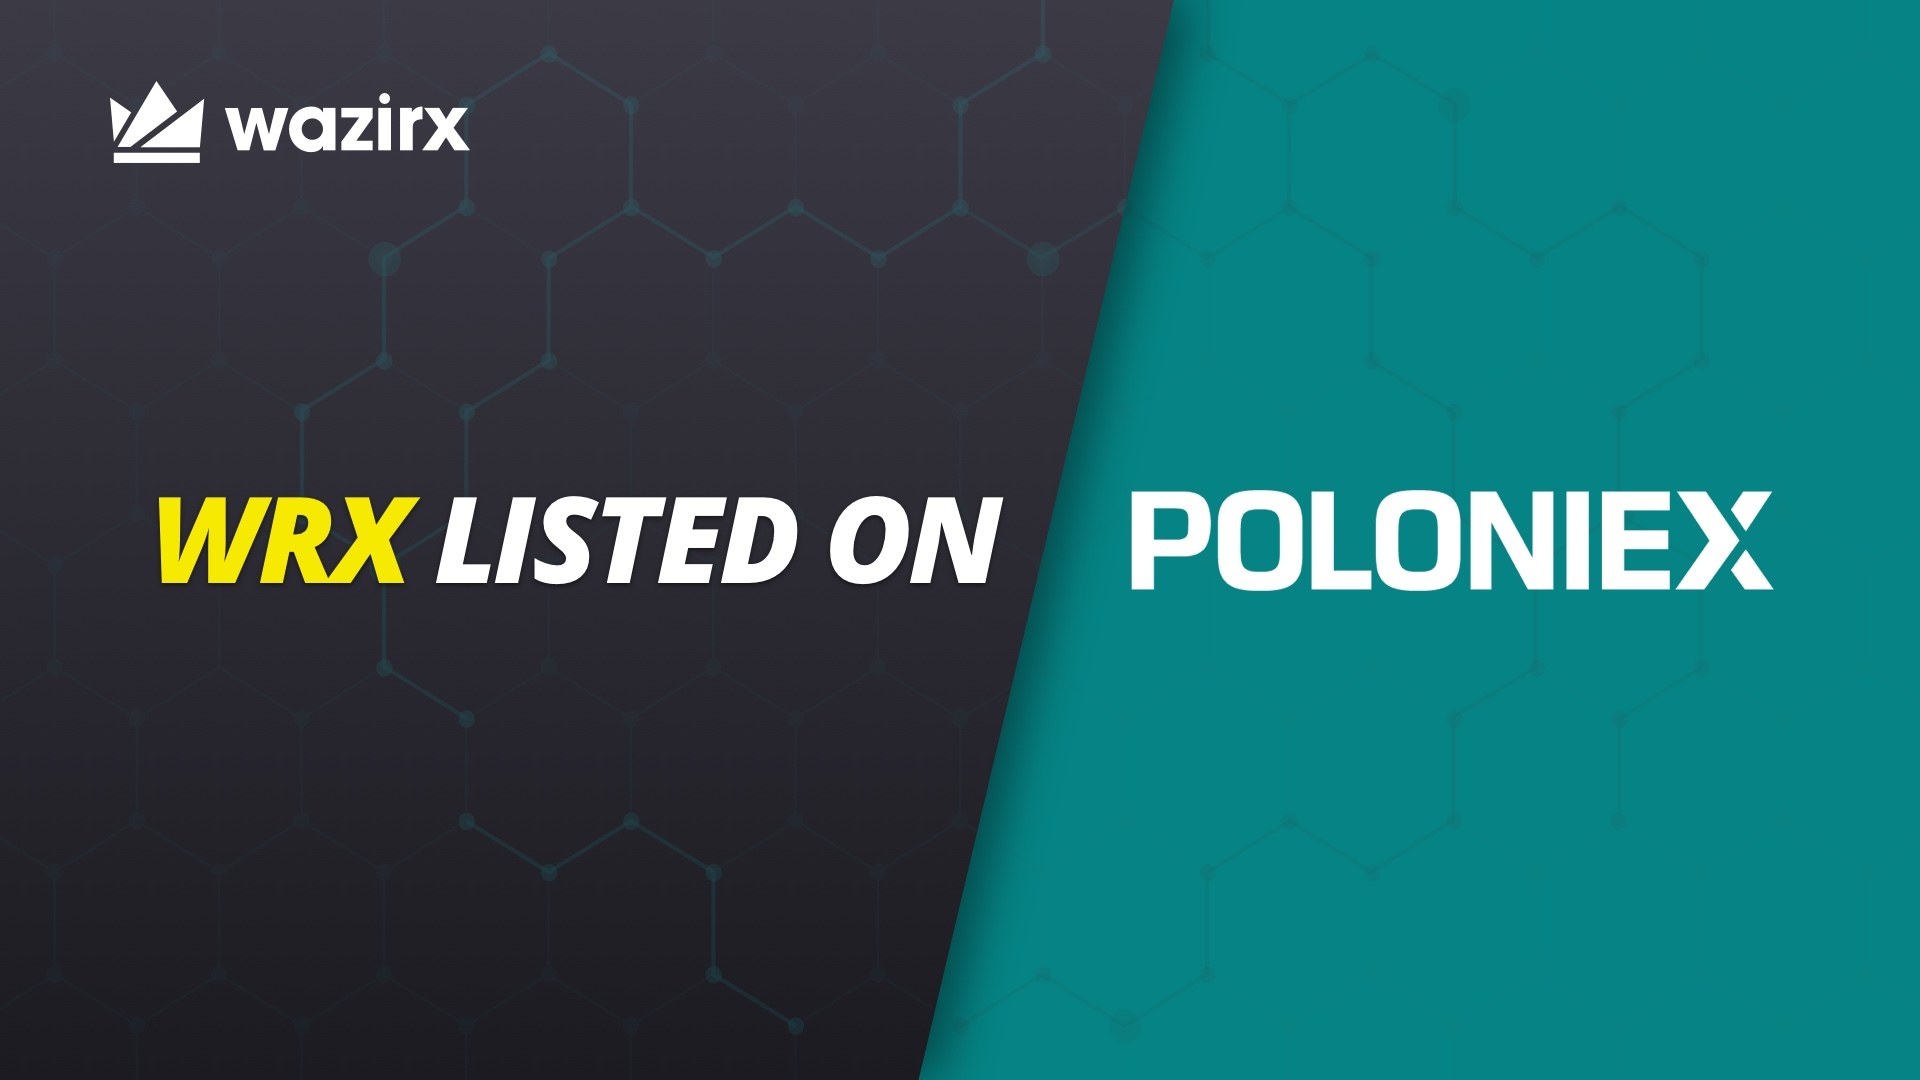 WRX is listed on Poloniex ⚡️ - WazirX Blog